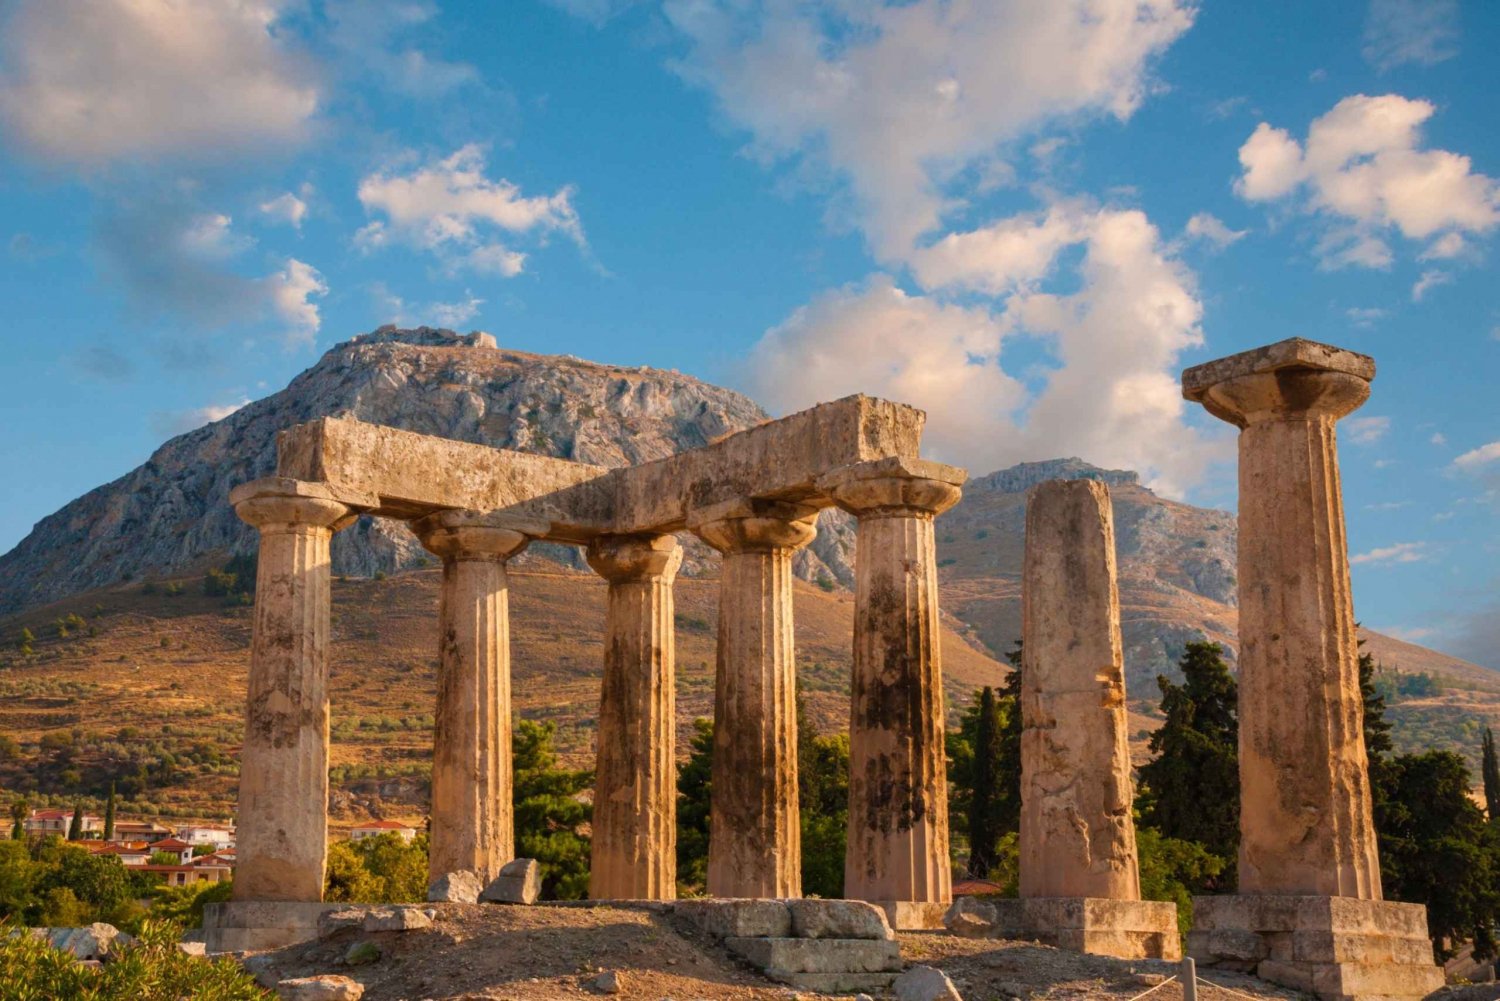 Muinaisen Korintin opastettu kierros Ateenasta